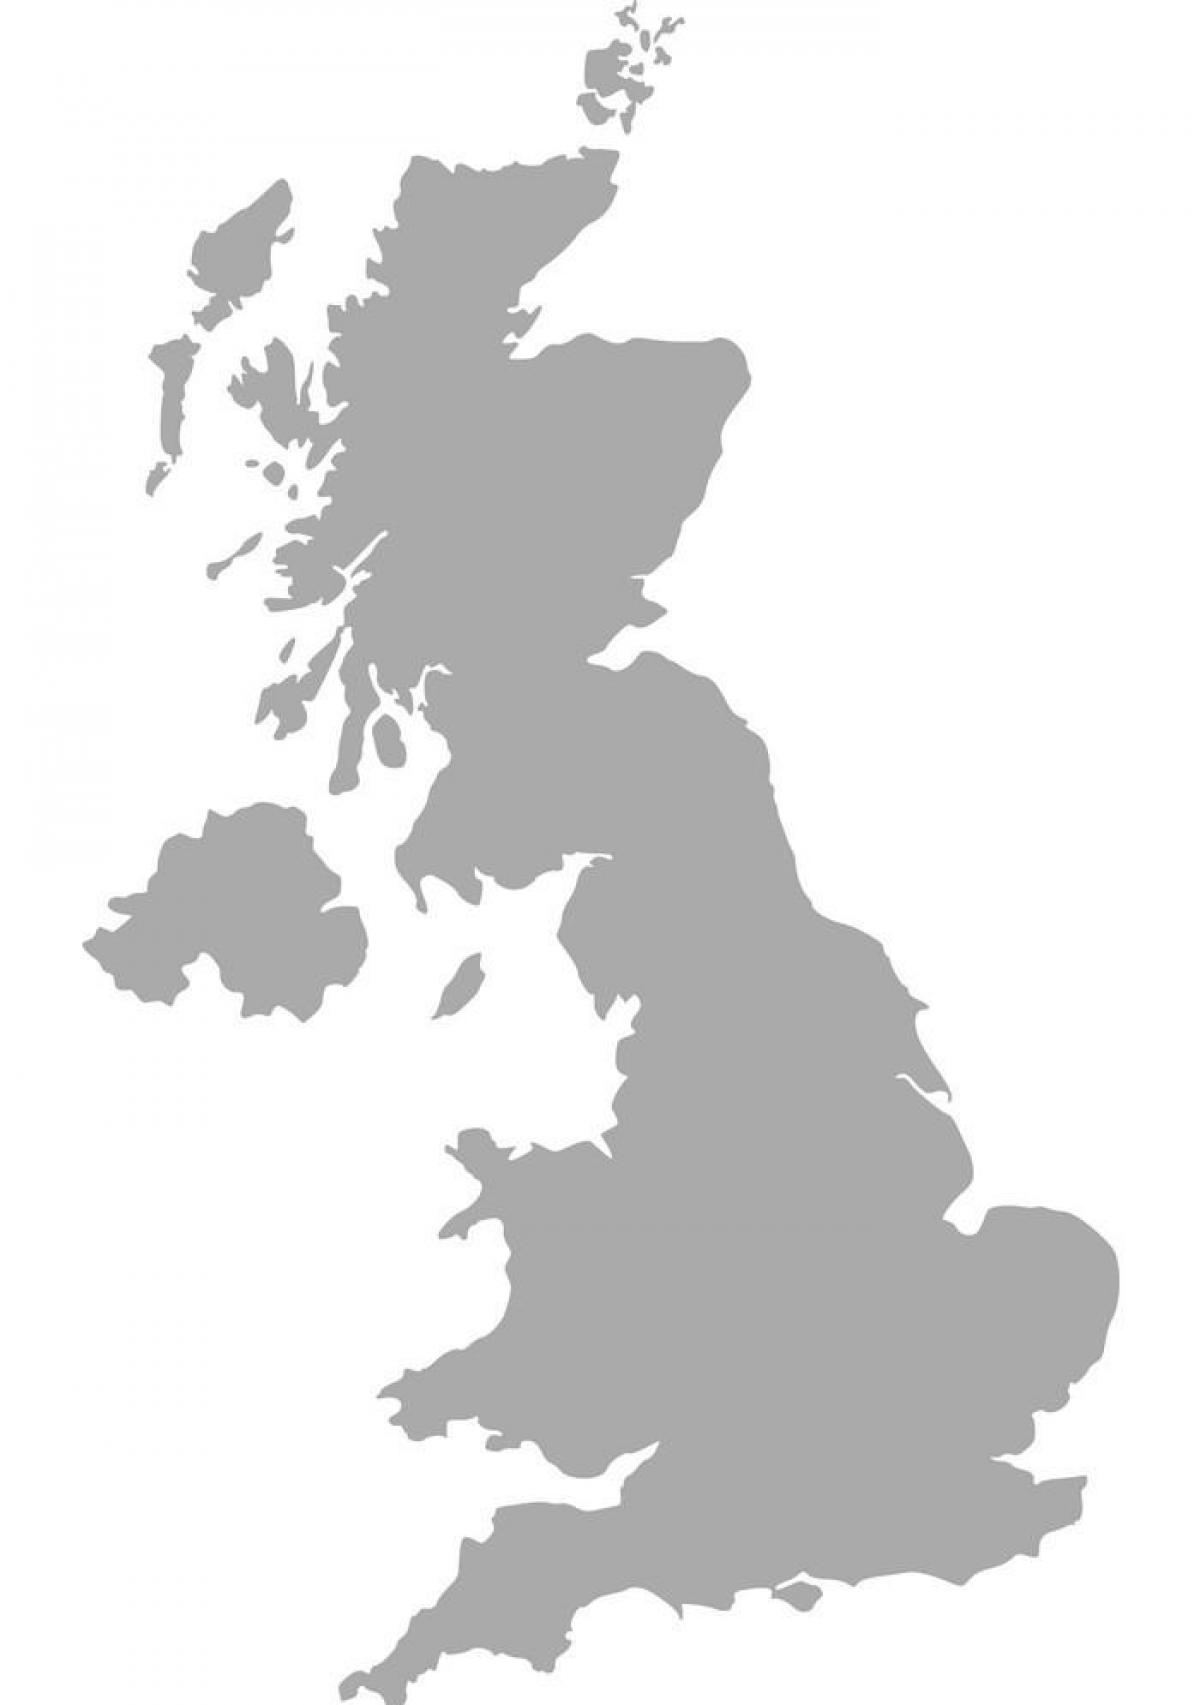 Zjednoczone Królestwo (UK) mapa wektorowa